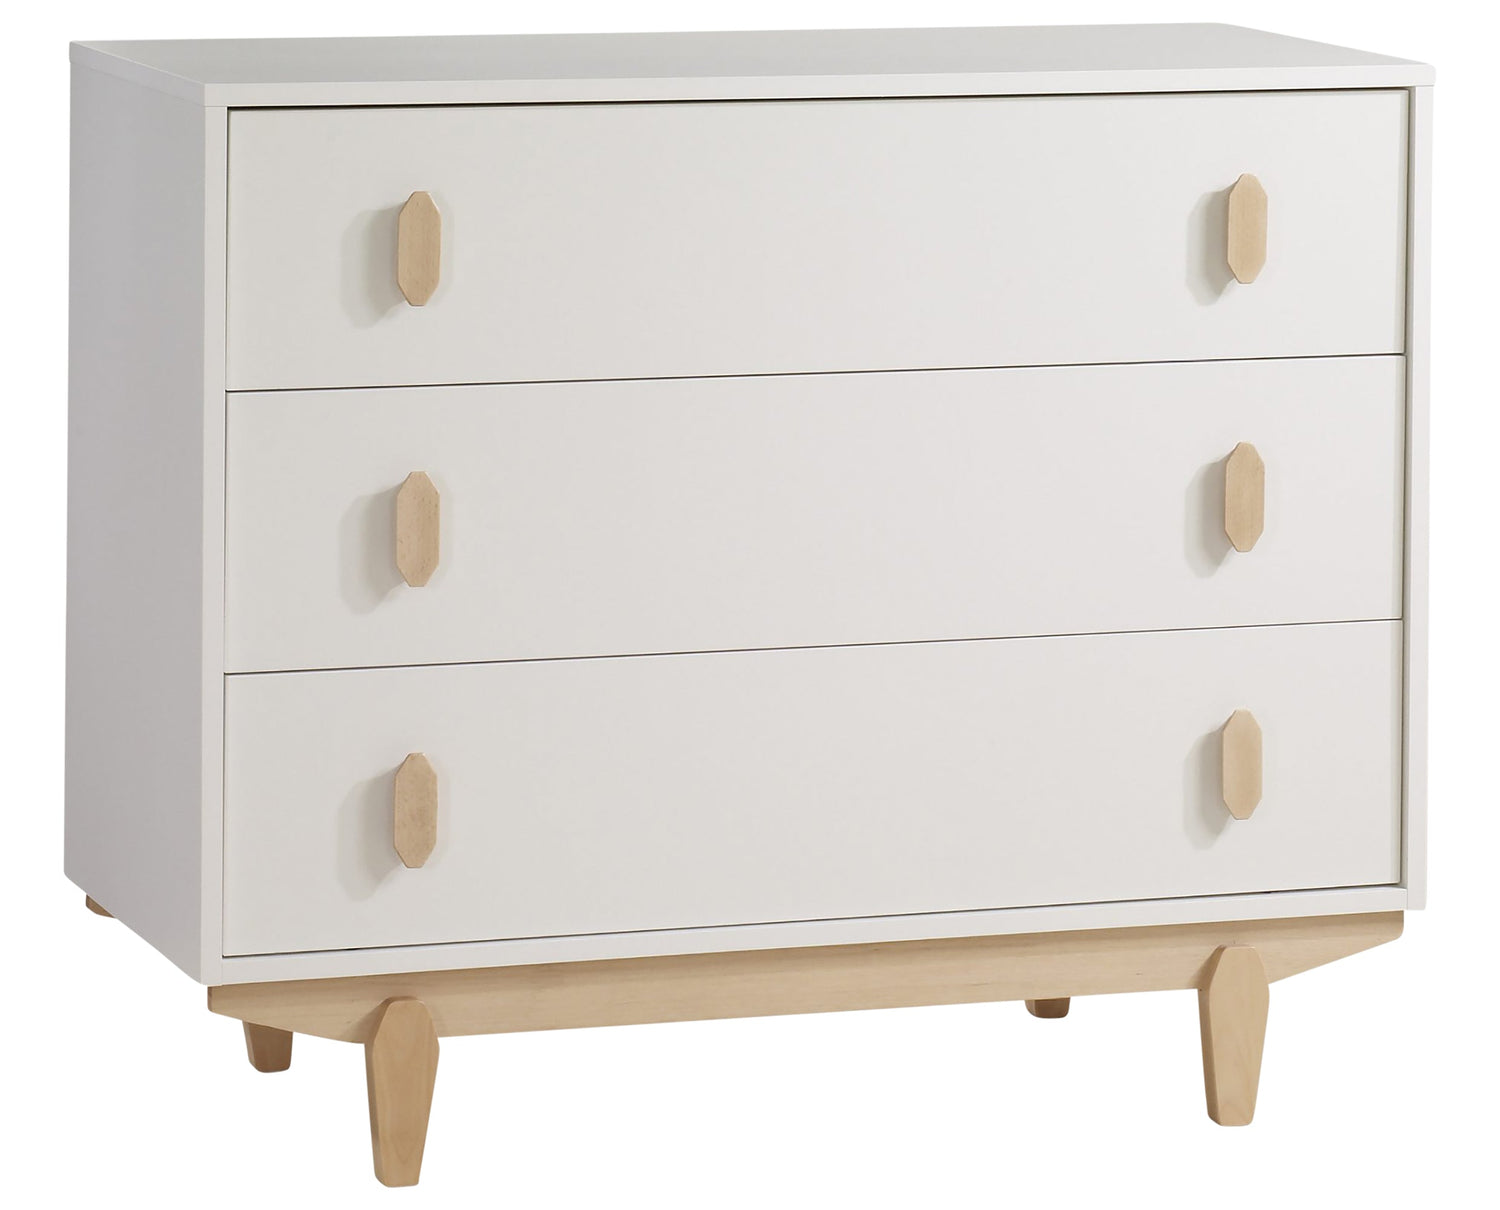 White Laminate and Natural Laminate with Natural Wood | Tate Crib & Dresser Set | Valley Ridge Furniture